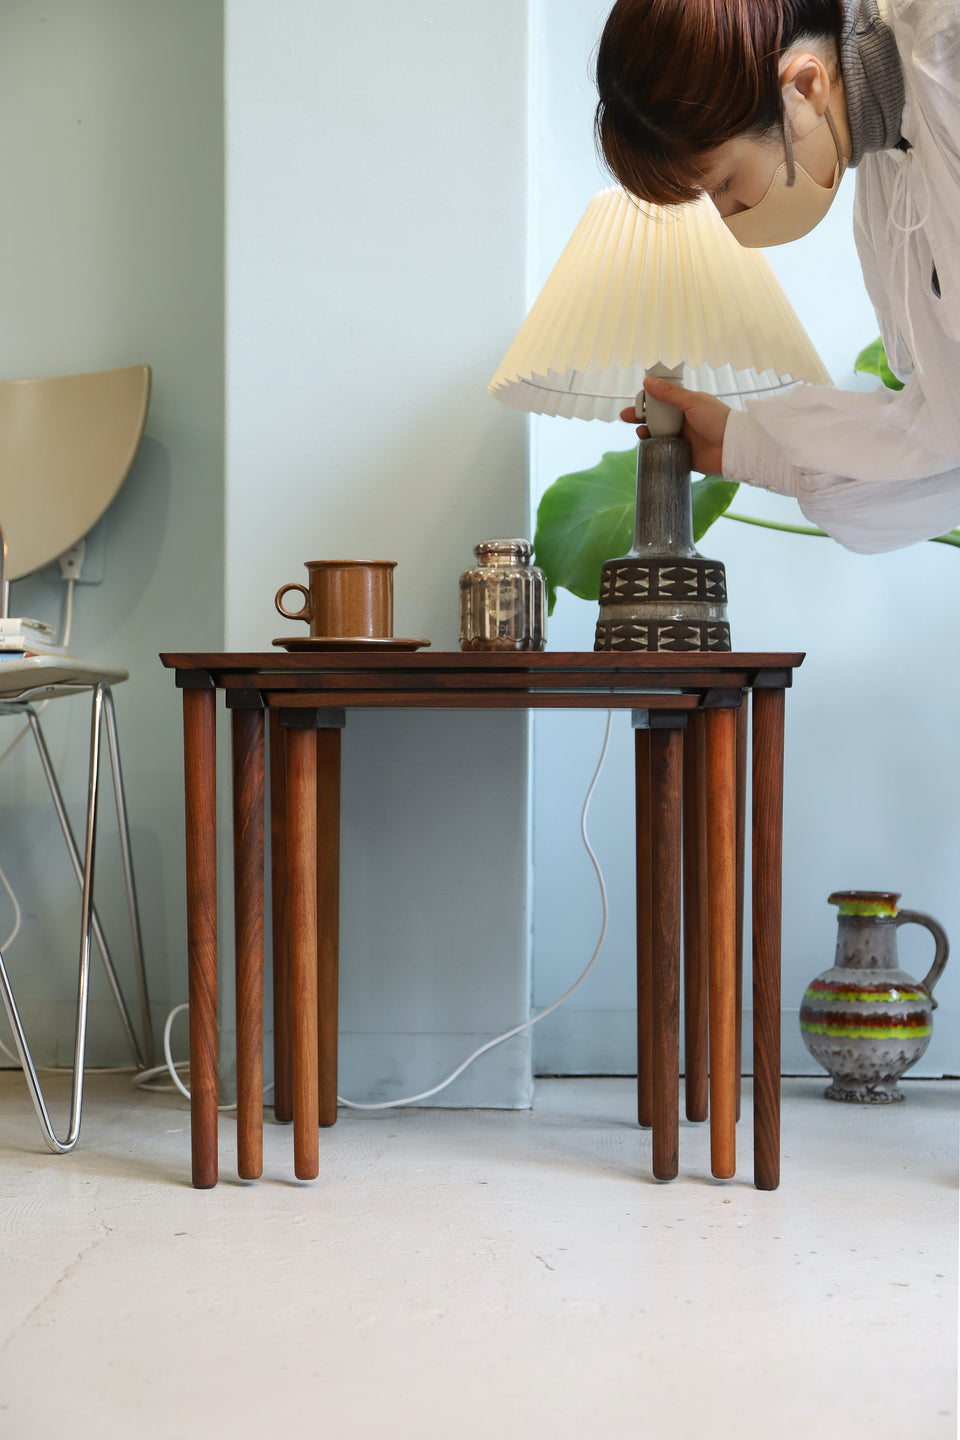 Rosewood Nesting Table Danish Vintage/デンマークヴィンテージ ネストテーブル ローズウッド サイドテーブル 北欧家具